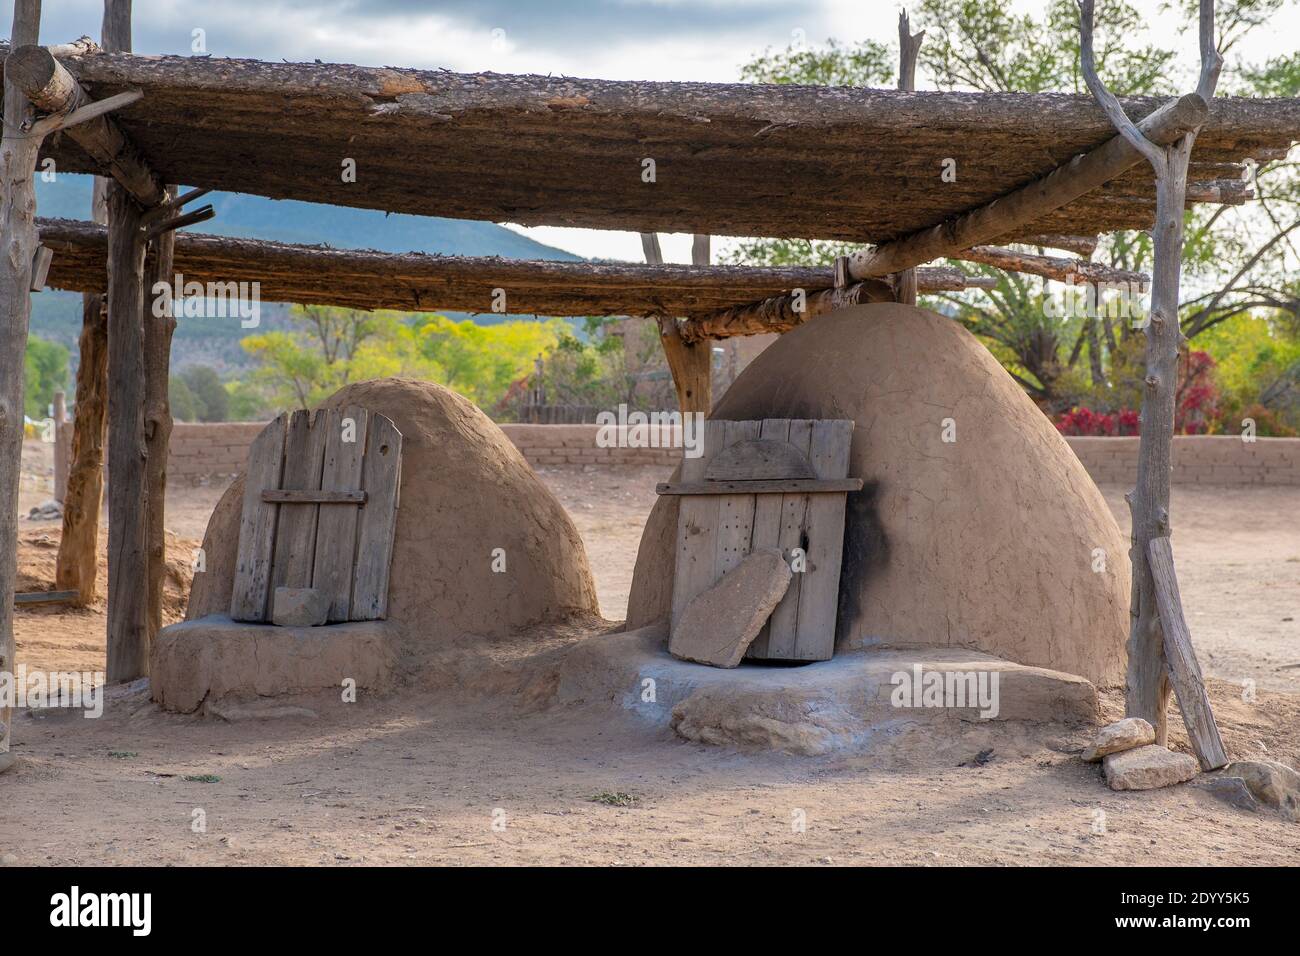 Fours de cuisson en plein air dans le village historique d'adobe amérindien de Taos Pueblo, Nouveau-Mexique, États-Unis. Un site classé au patrimoine mondial de l'UNESCO. Banque D'Images